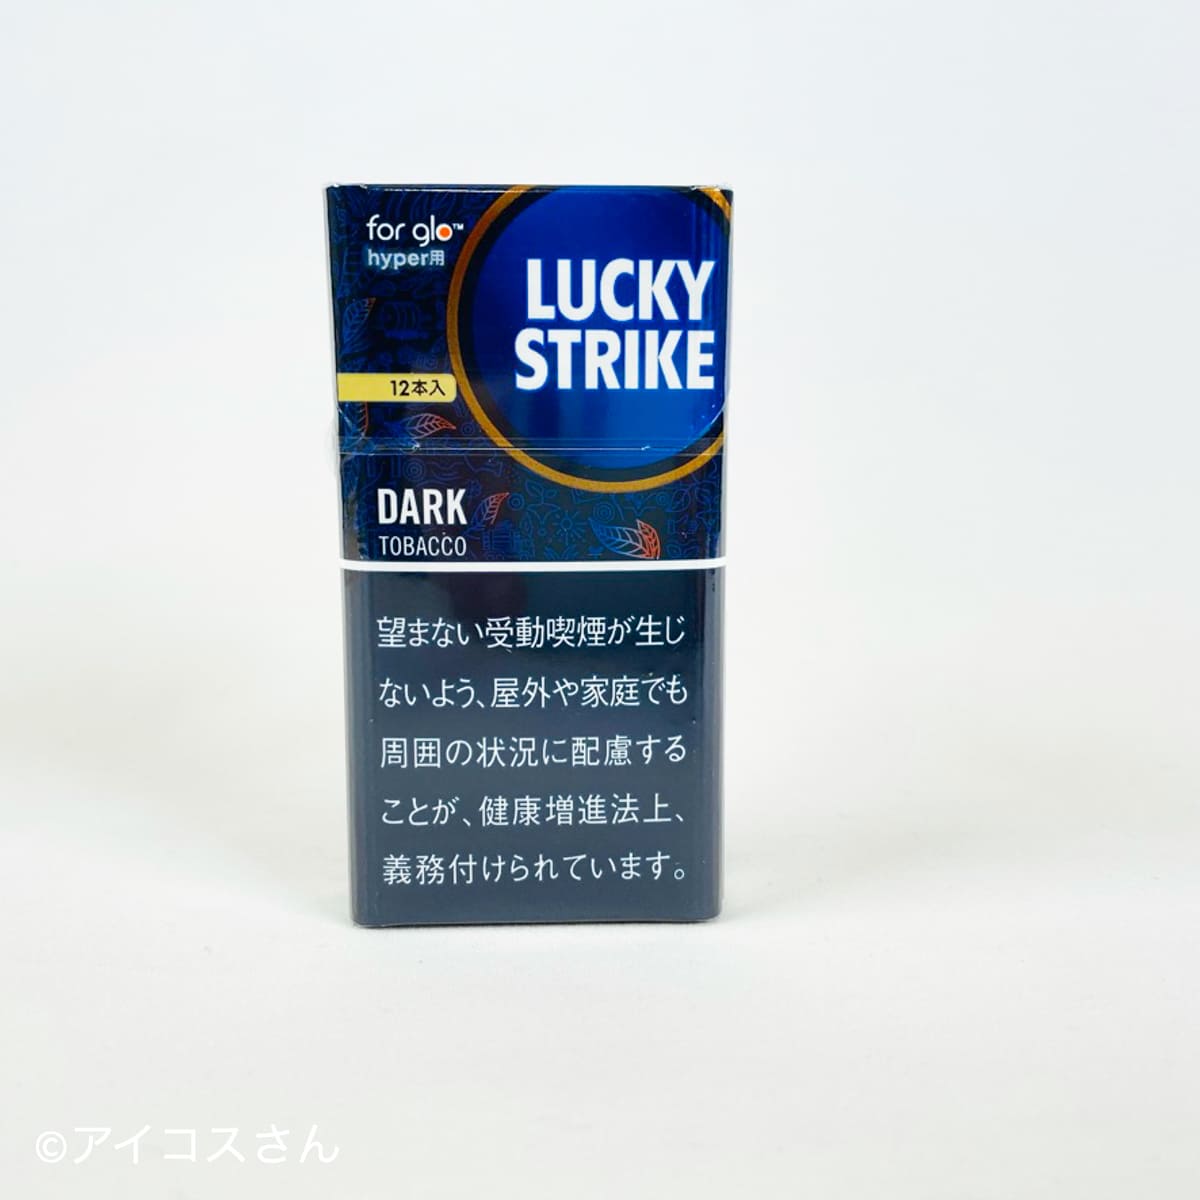 ラッキーストライク「ダーク・タバコ」の画像